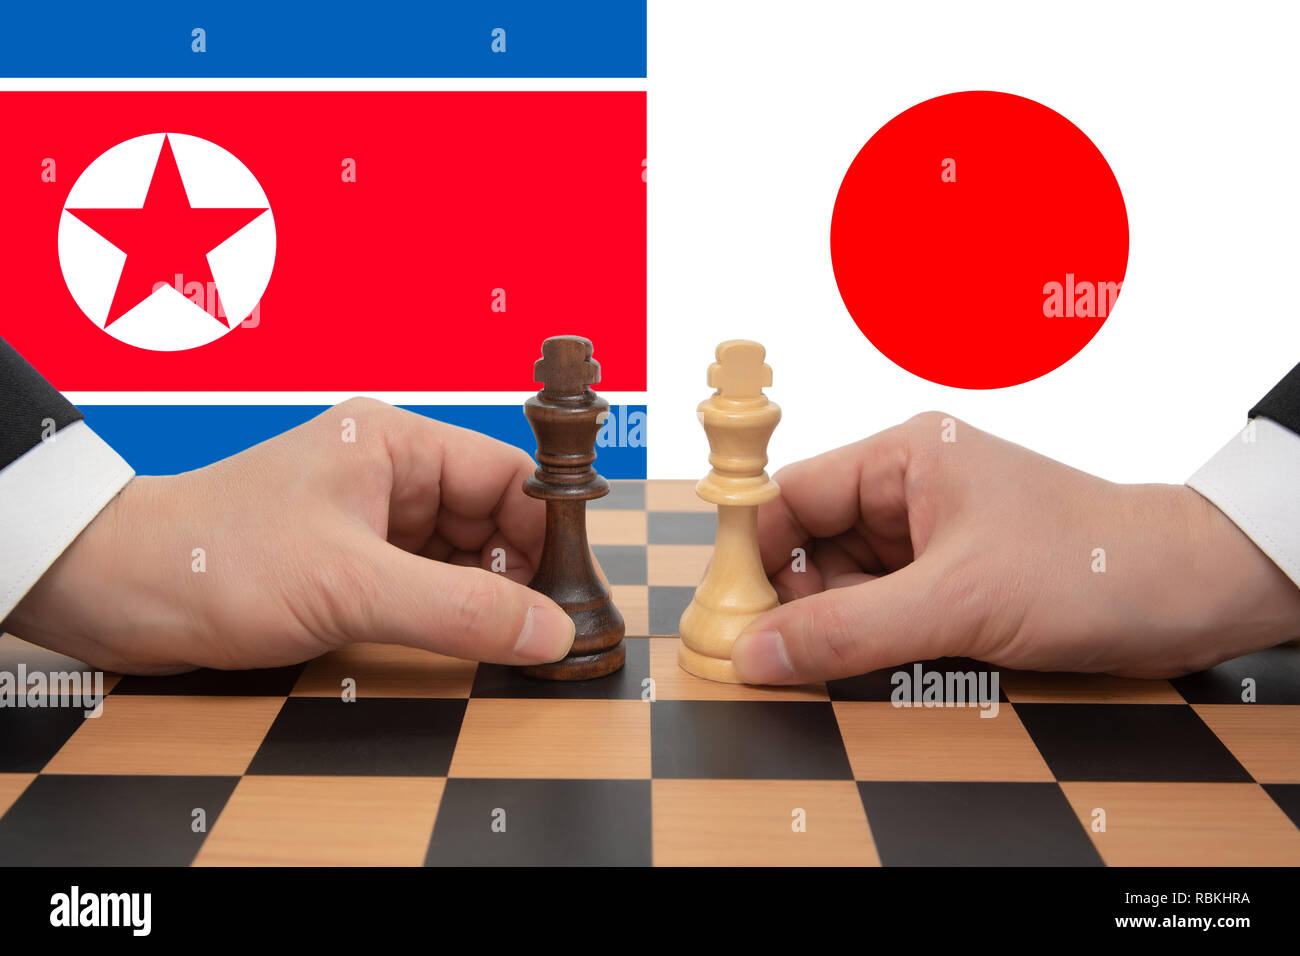 Korea-Japandu Sommet a exprimé dans un jeu d'échecs. Banque D'Images